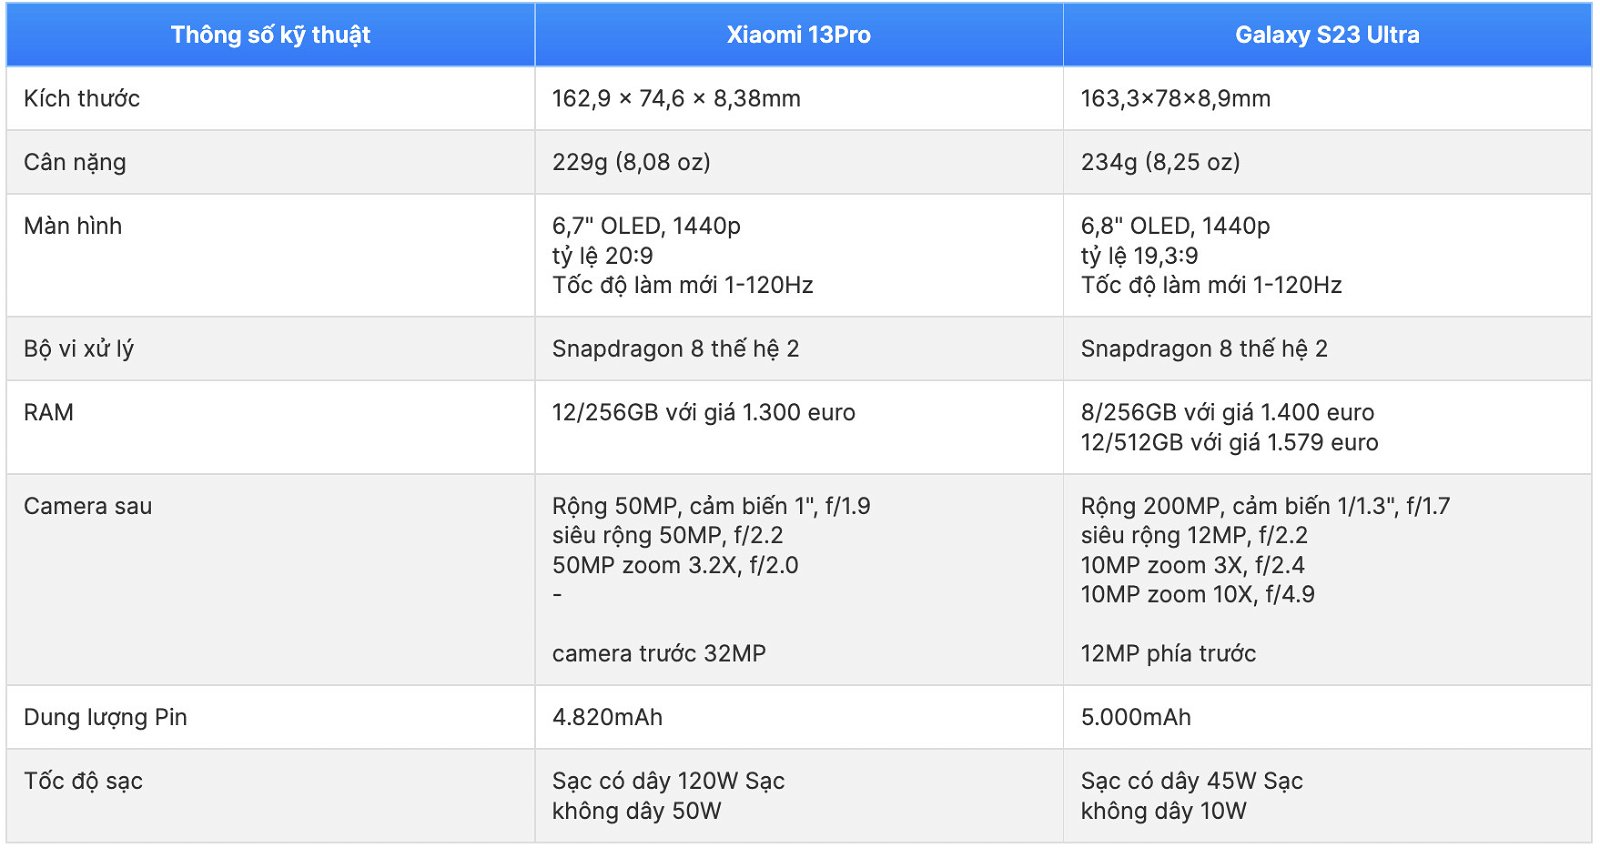 Cấu hình Galaxy S23 Ultra và Xiaomi 13 Pro đều được cung cấp sức mạnh từ chip xử lý Snapdragon 8 Gen 2 